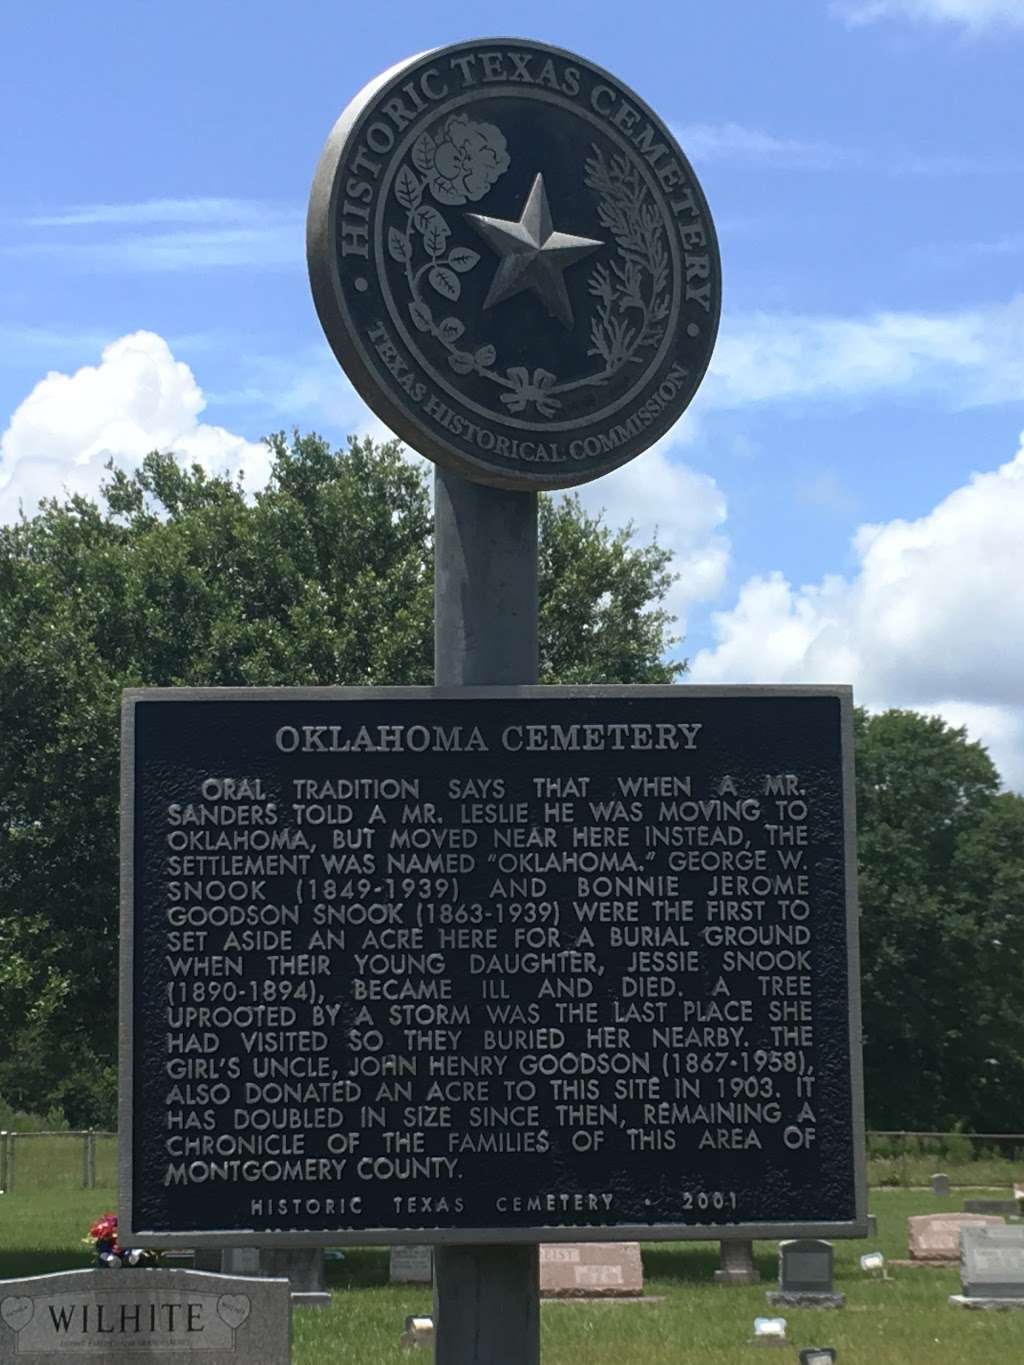 Oklahoma Cemetery | Hufsmith Conroe Rd, Magnolia, TX 77354